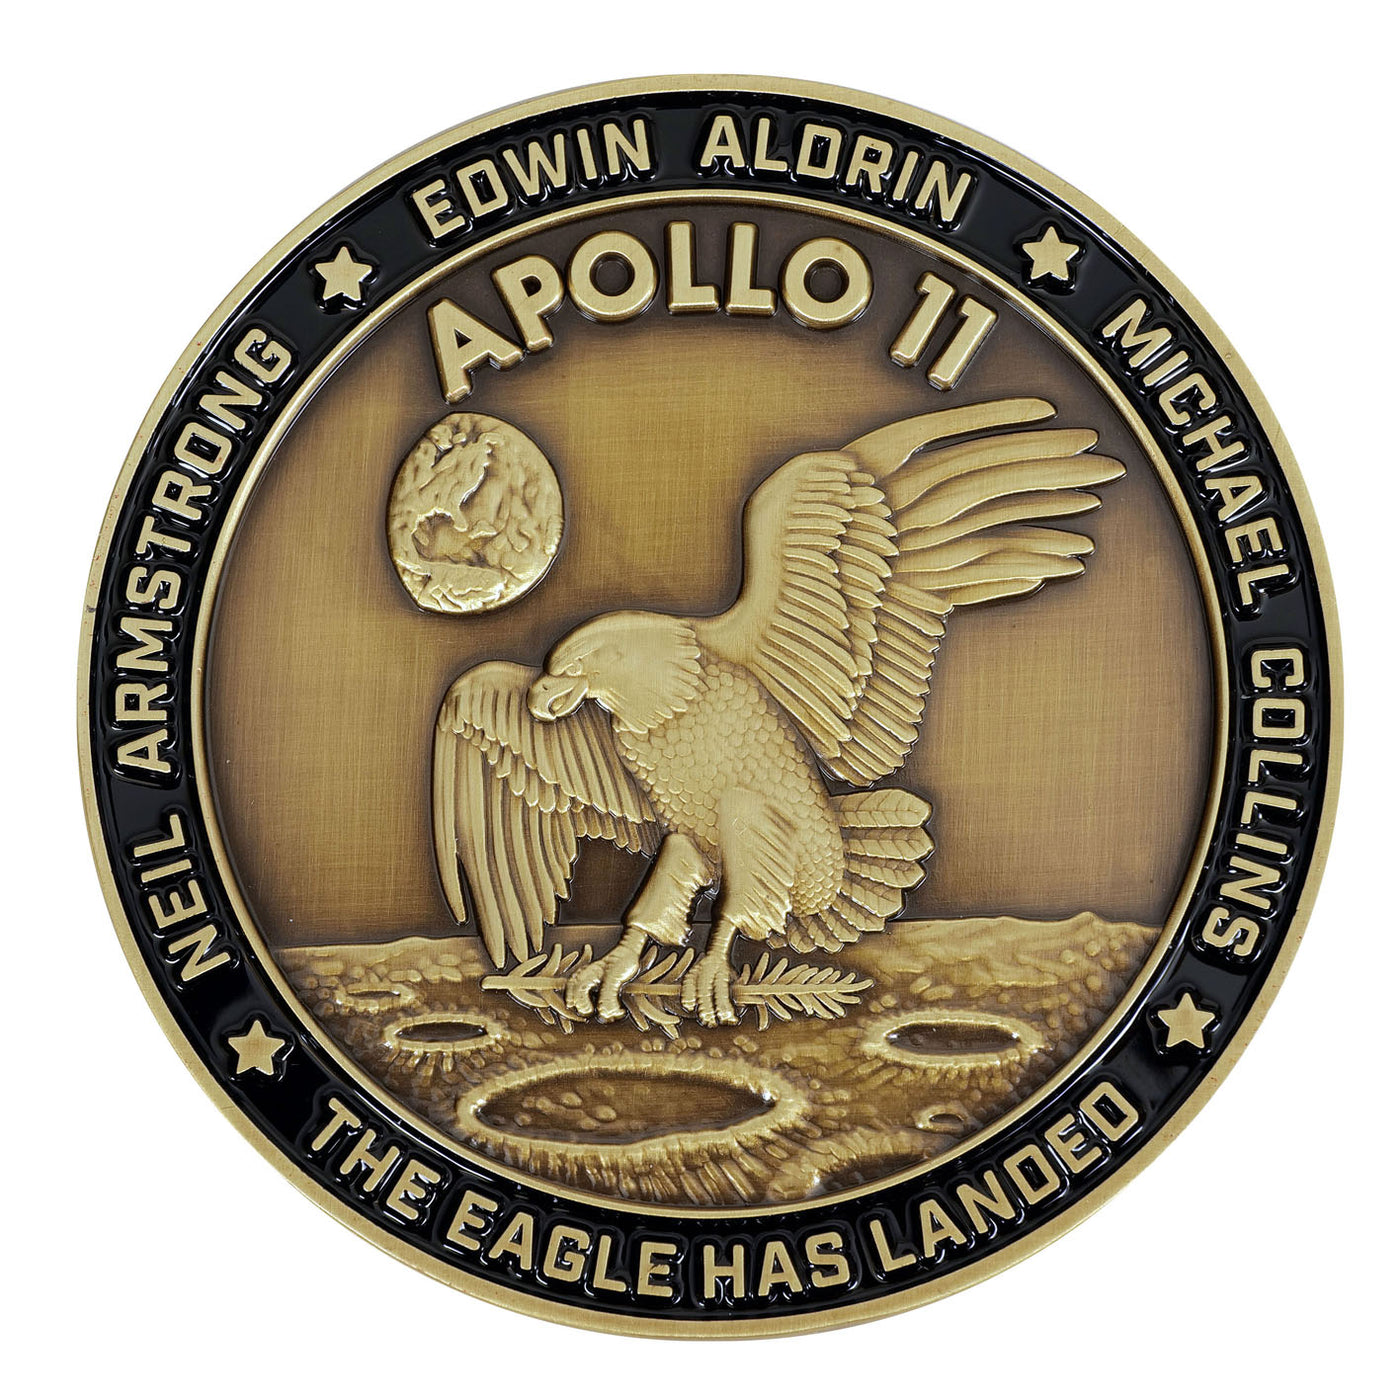 Apollo 11 medallion with large visible flown Kapton foil piece